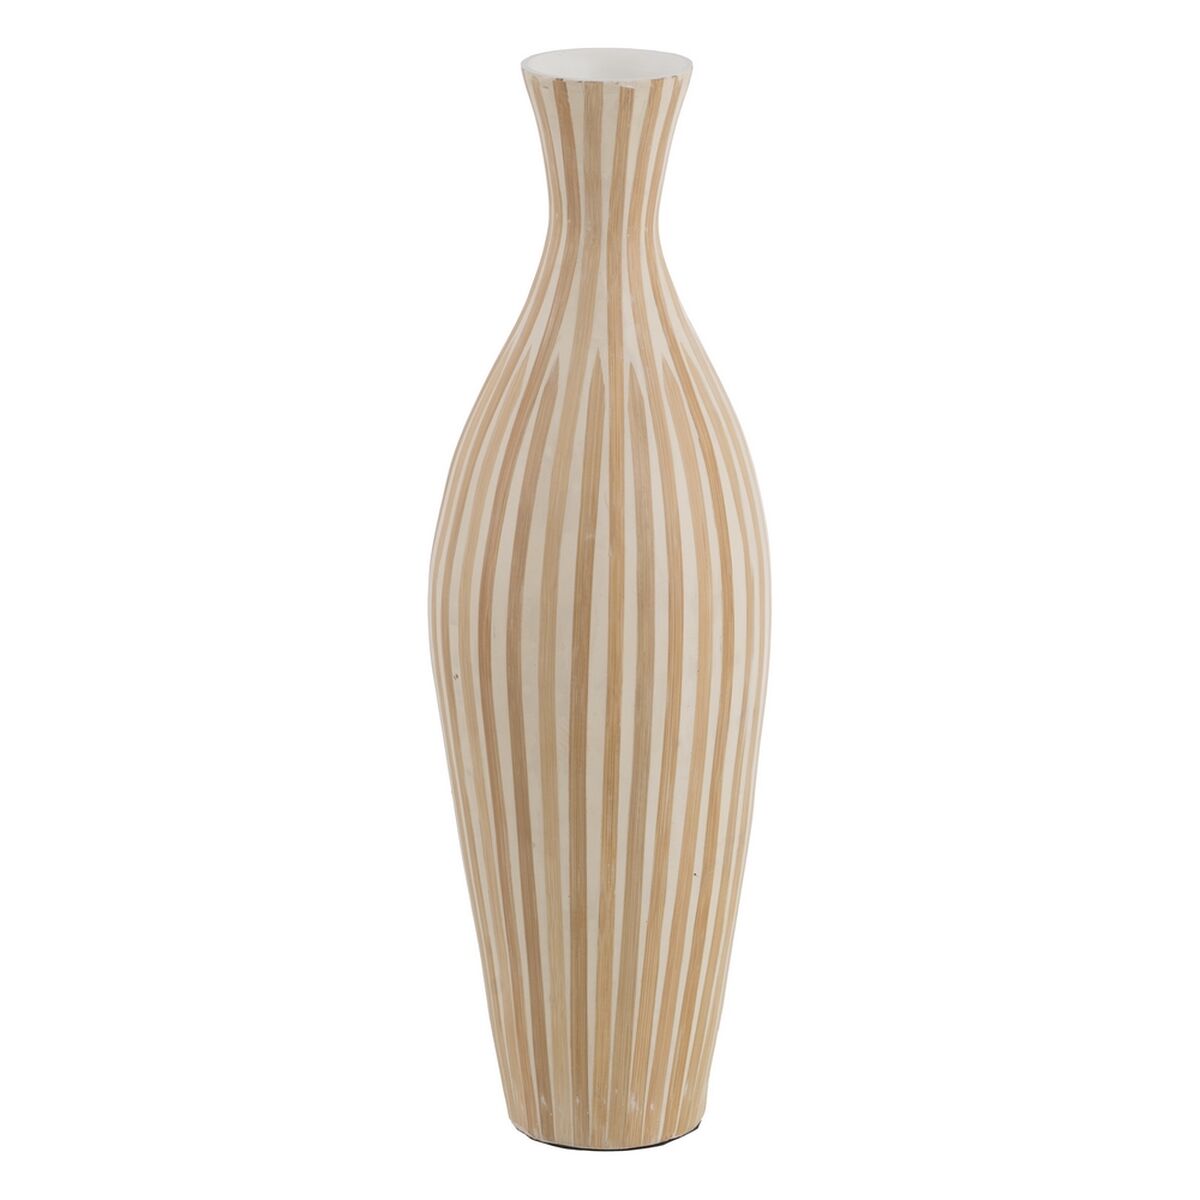 Vaso Bianco Beige Bambù 20 x 20 x 64 cm